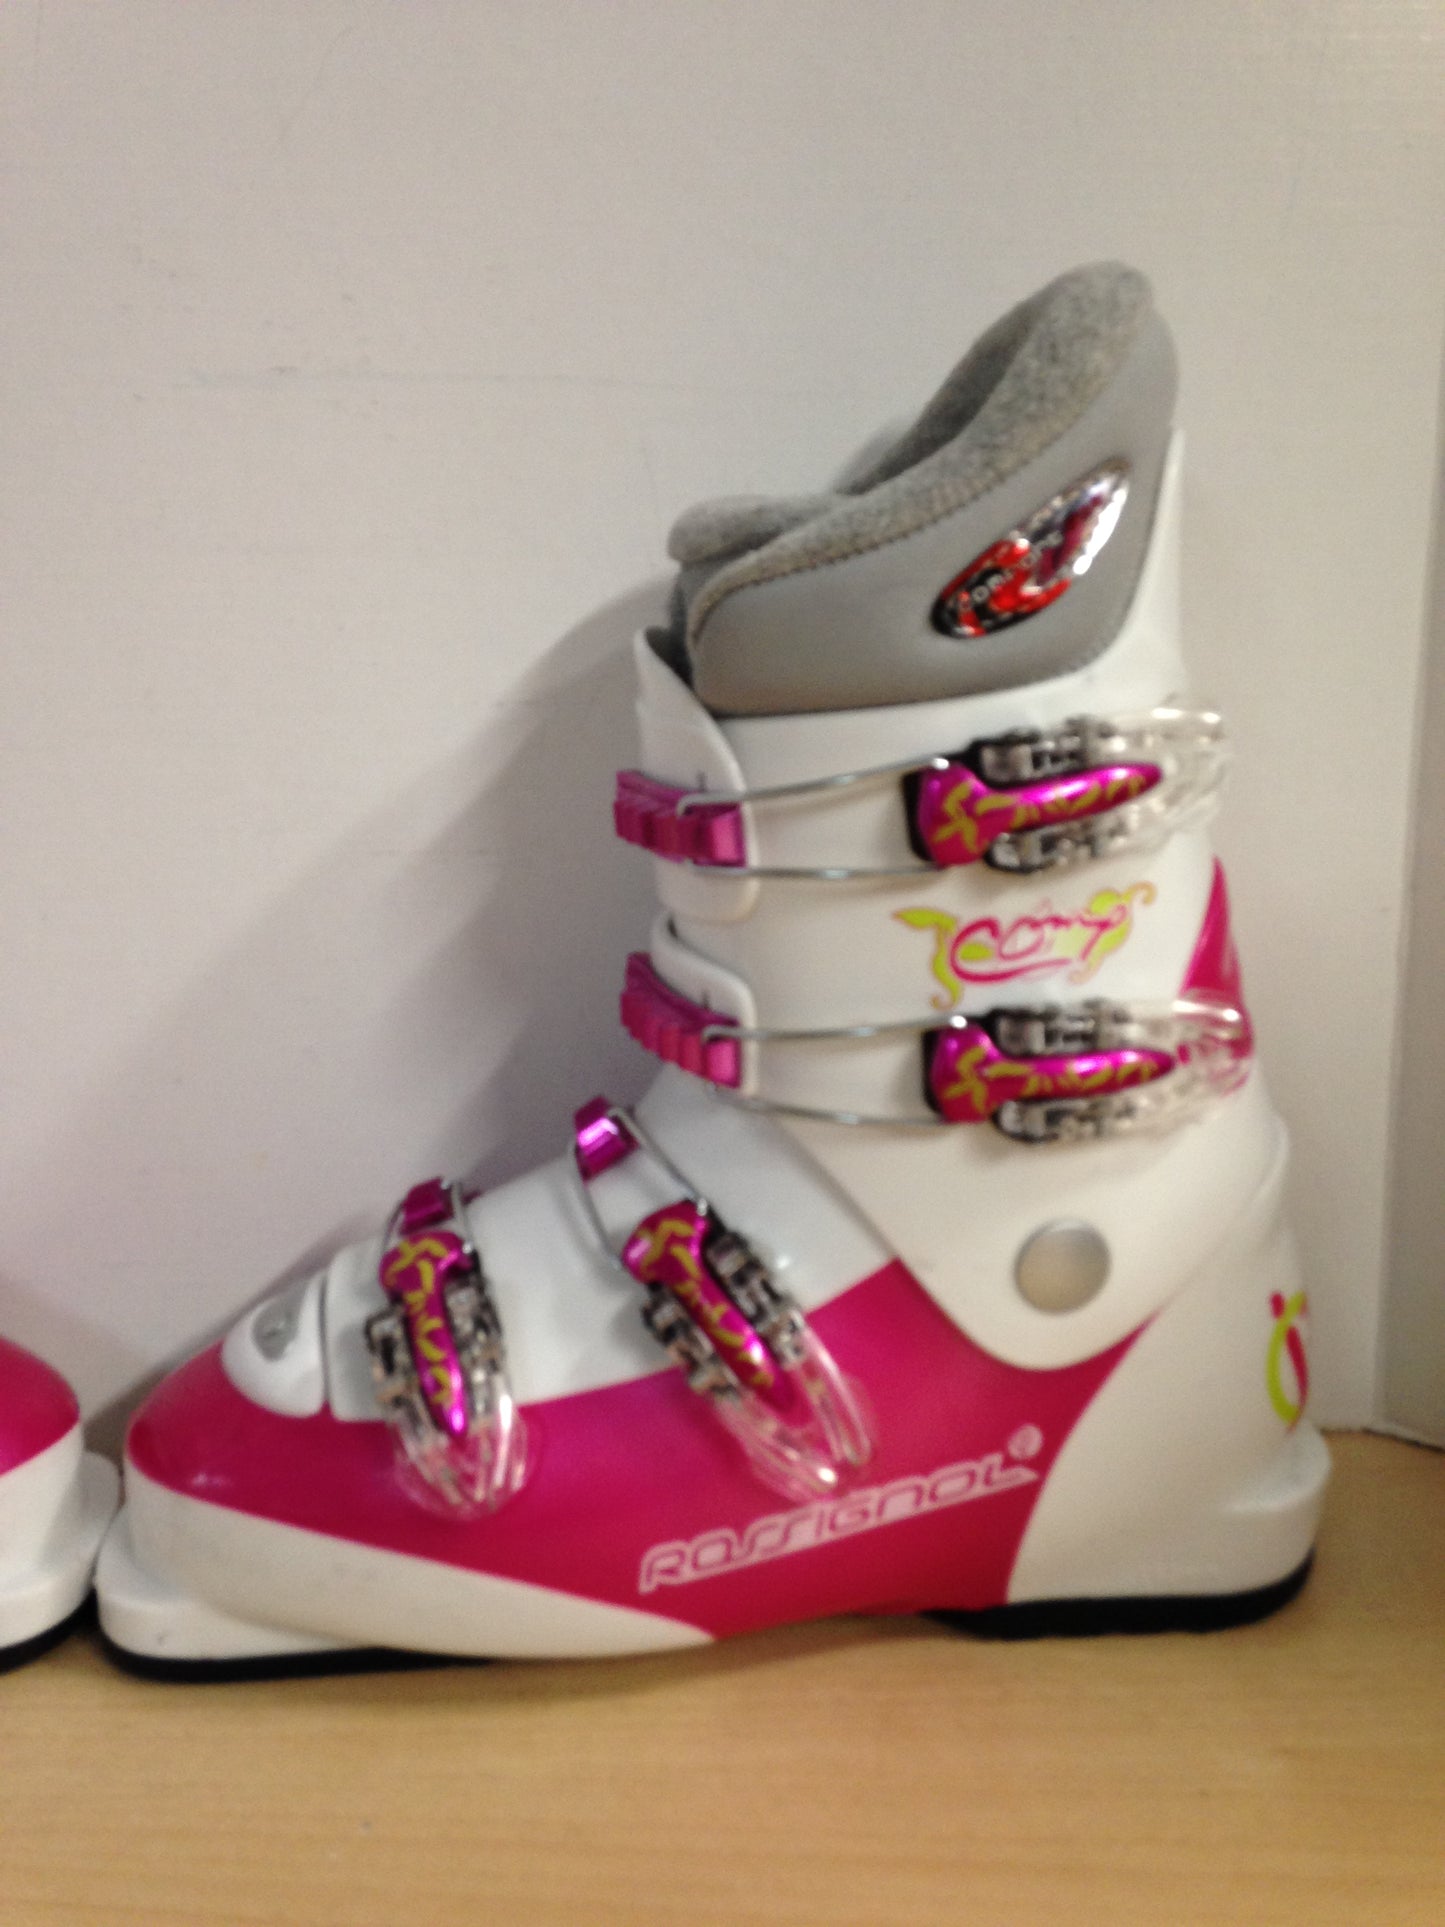 Ski Boots Mondo Size 24.5 Ladies Size 7 283 mm Rossignol Pink White Excellent